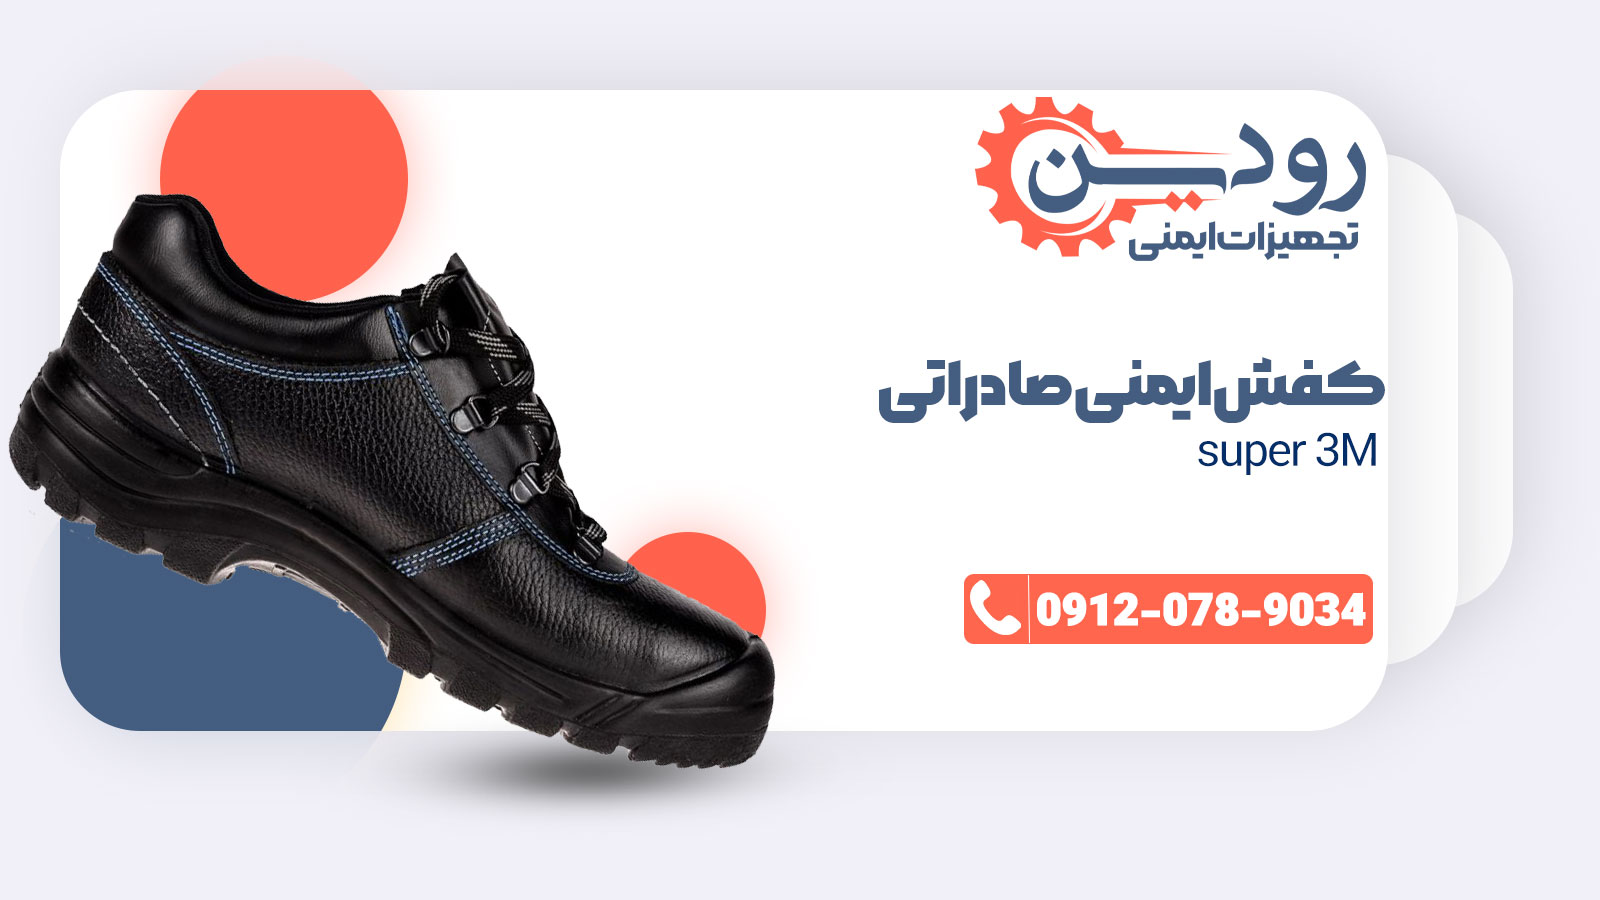 فروش کفش ایمنی صادراتی super 3m توسط شرکت یحیی و ایمن پا انجام میشود.